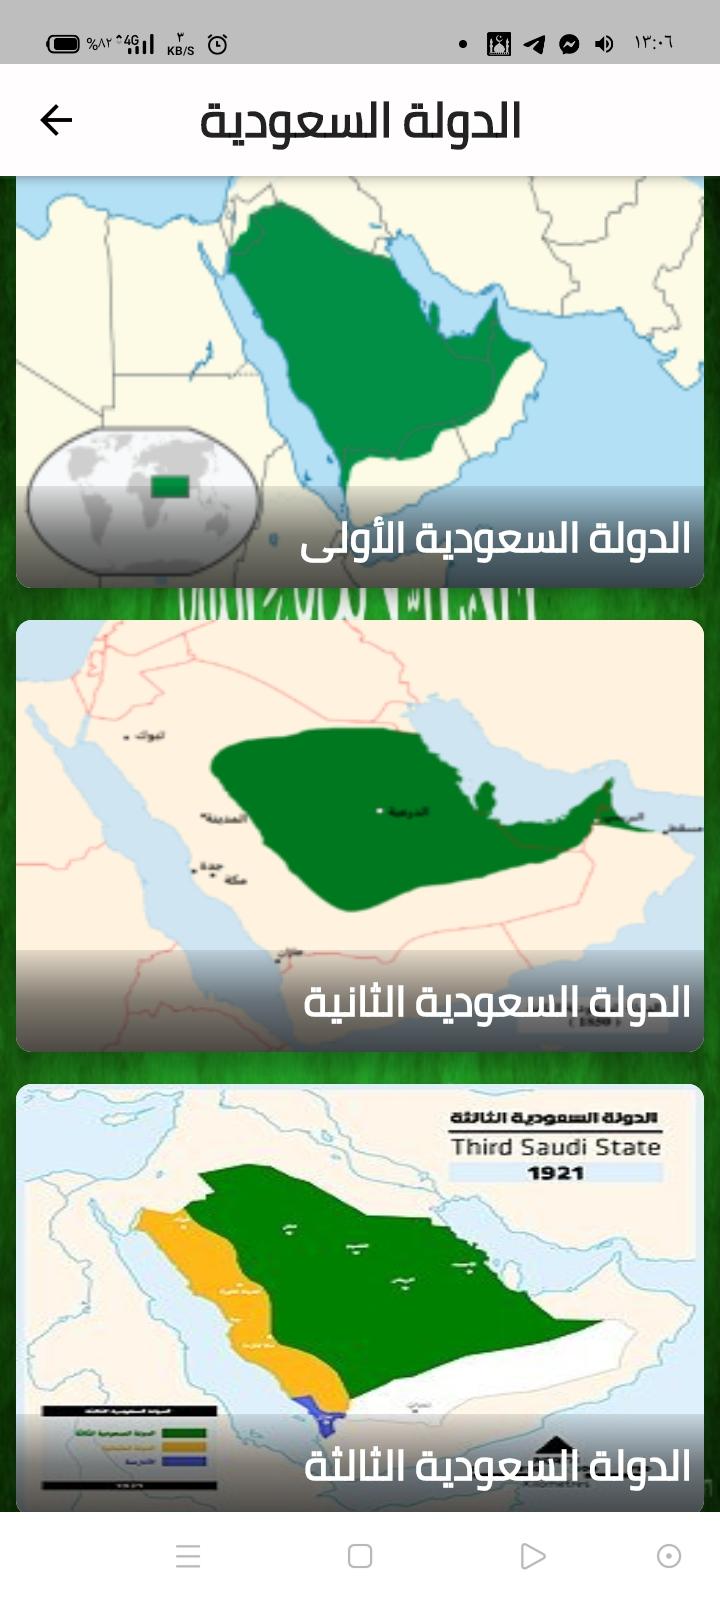 الثالثة تأسيس الدولة السعودية تأسيس الدولة